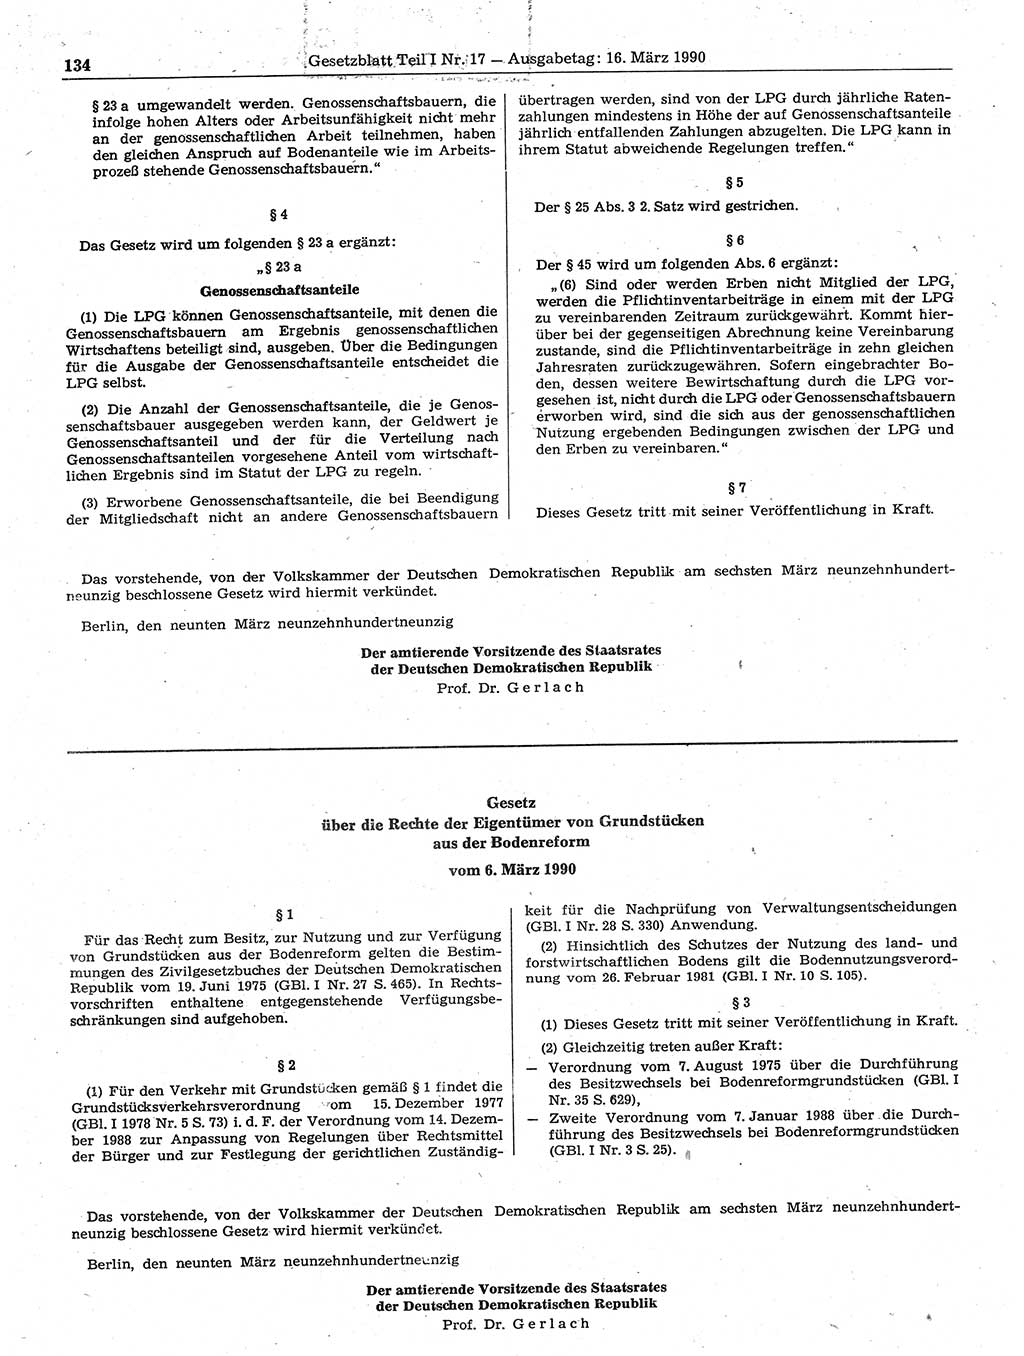 Gesetzblatt (GBl.) der Deutschen Demokratischen Republik (DDR) Teil Ⅰ 1990, Seite 134 (GBl. DDR Ⅰ 1990, S. 134)